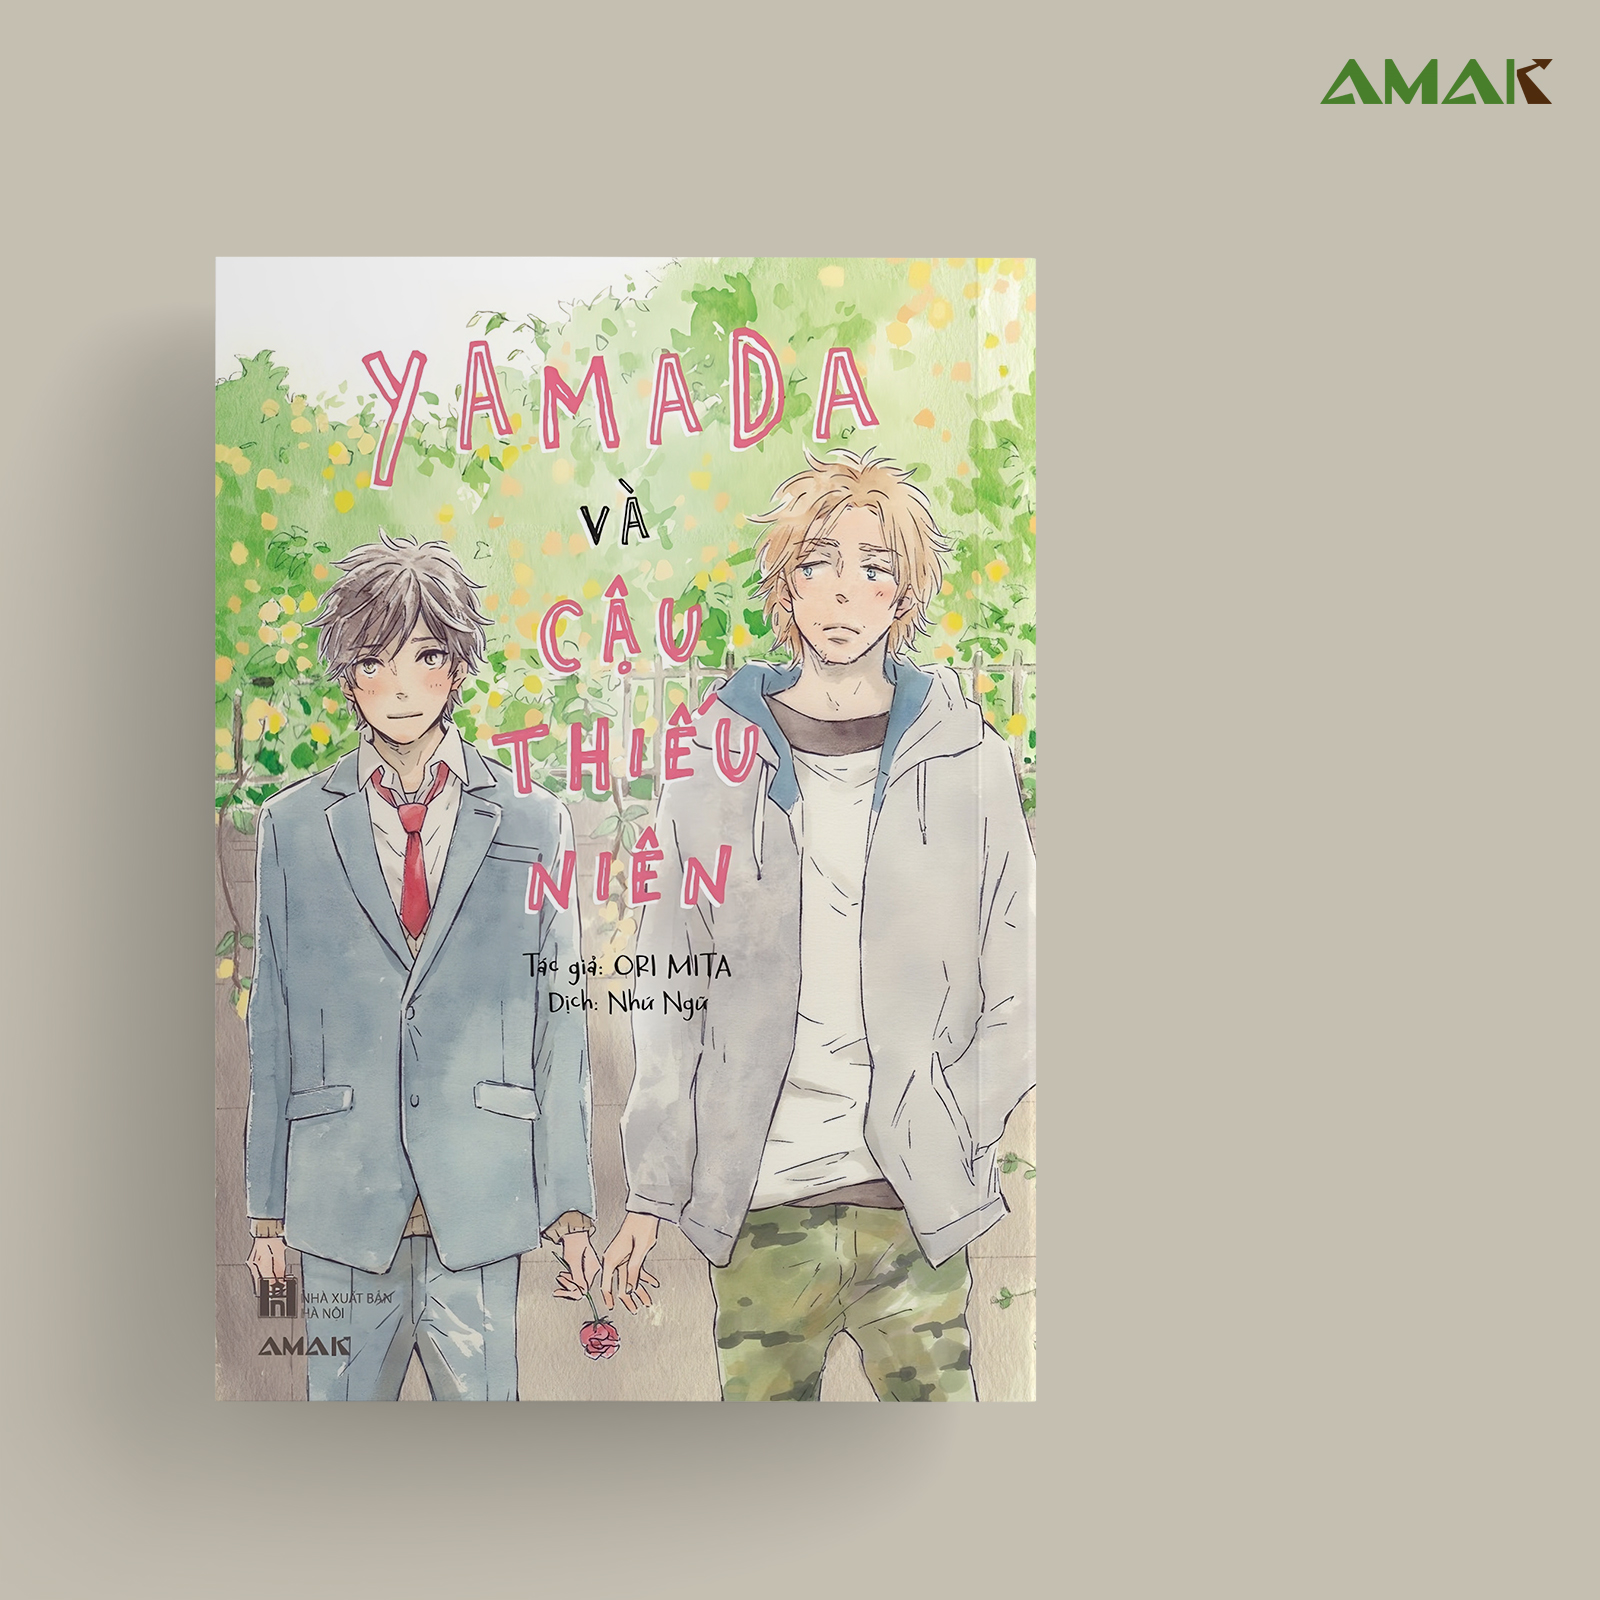 [Manga] Yamada Và Cậu Thiếu Niên - Amakbooks